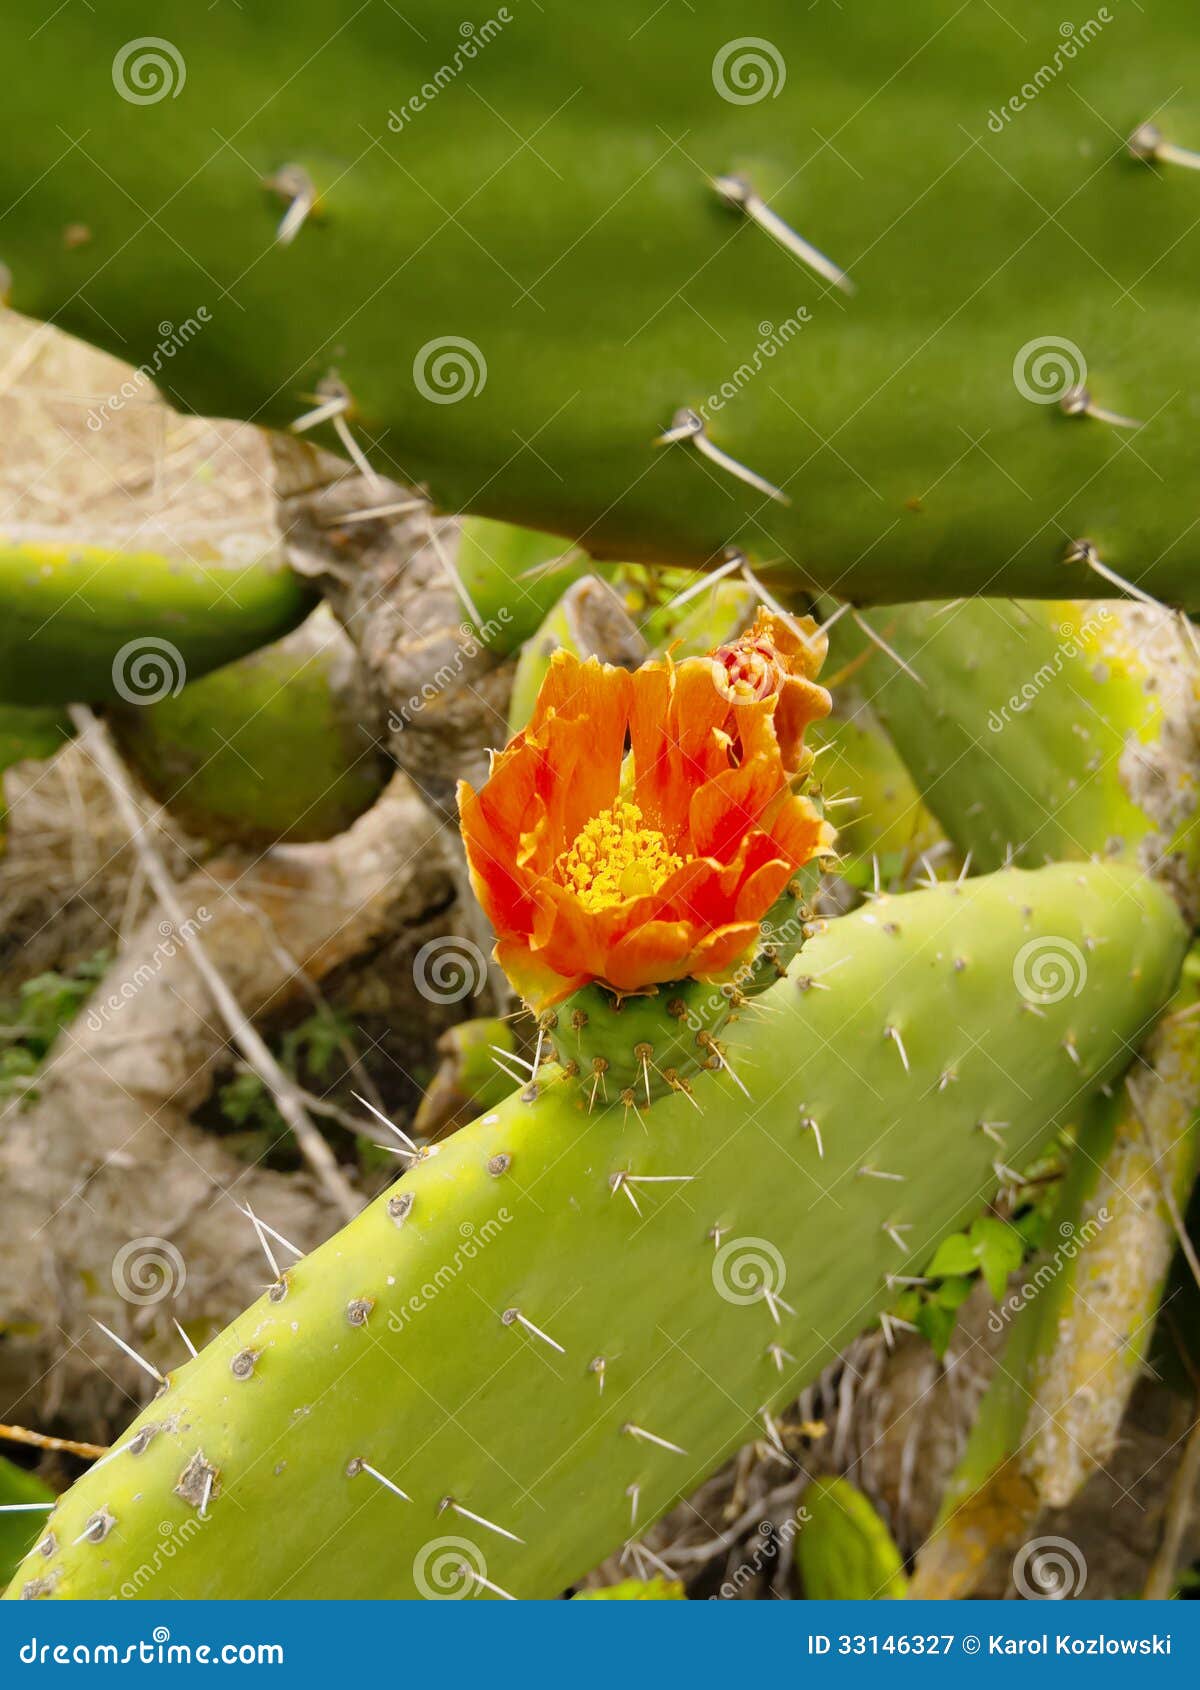 Kaktus auf La Palma. Kaktus mit Blume auf dem Insel La Palma, Kanarische Inseln, Spanien